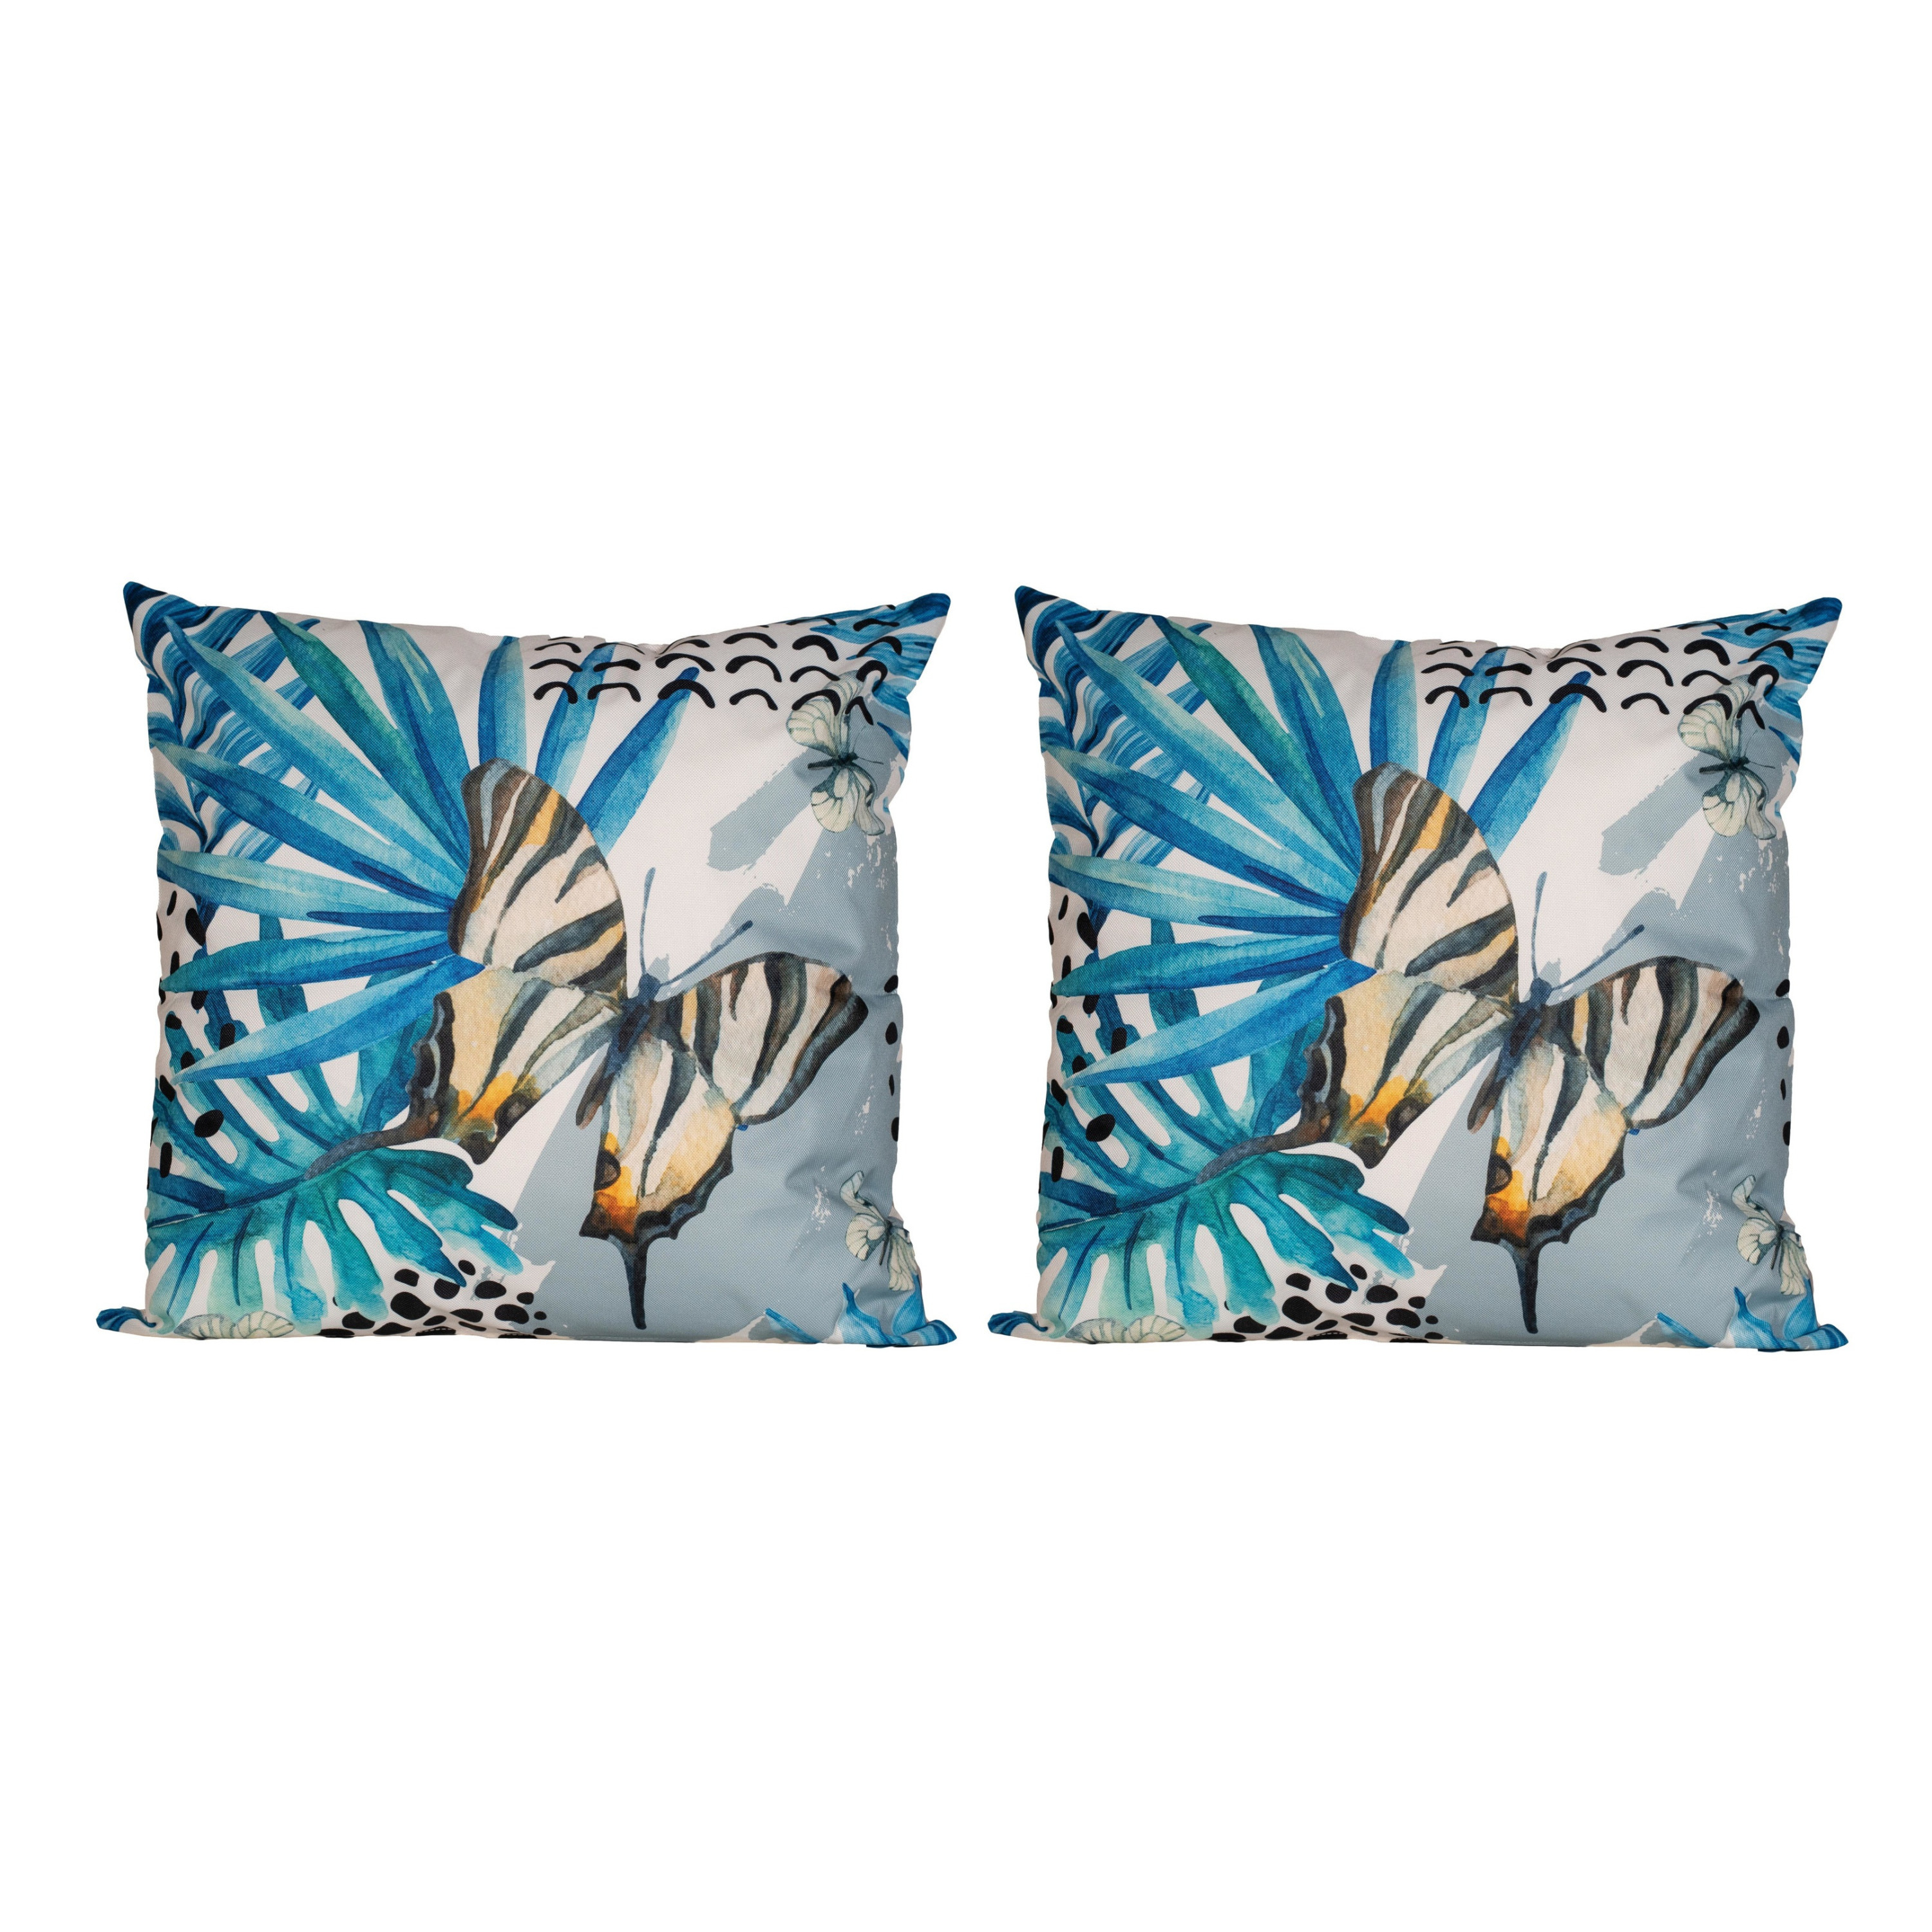 8x Bank-sier kussens met blauwe palm plant-bladeren print voor binnen en buiten 45 x 45 cm